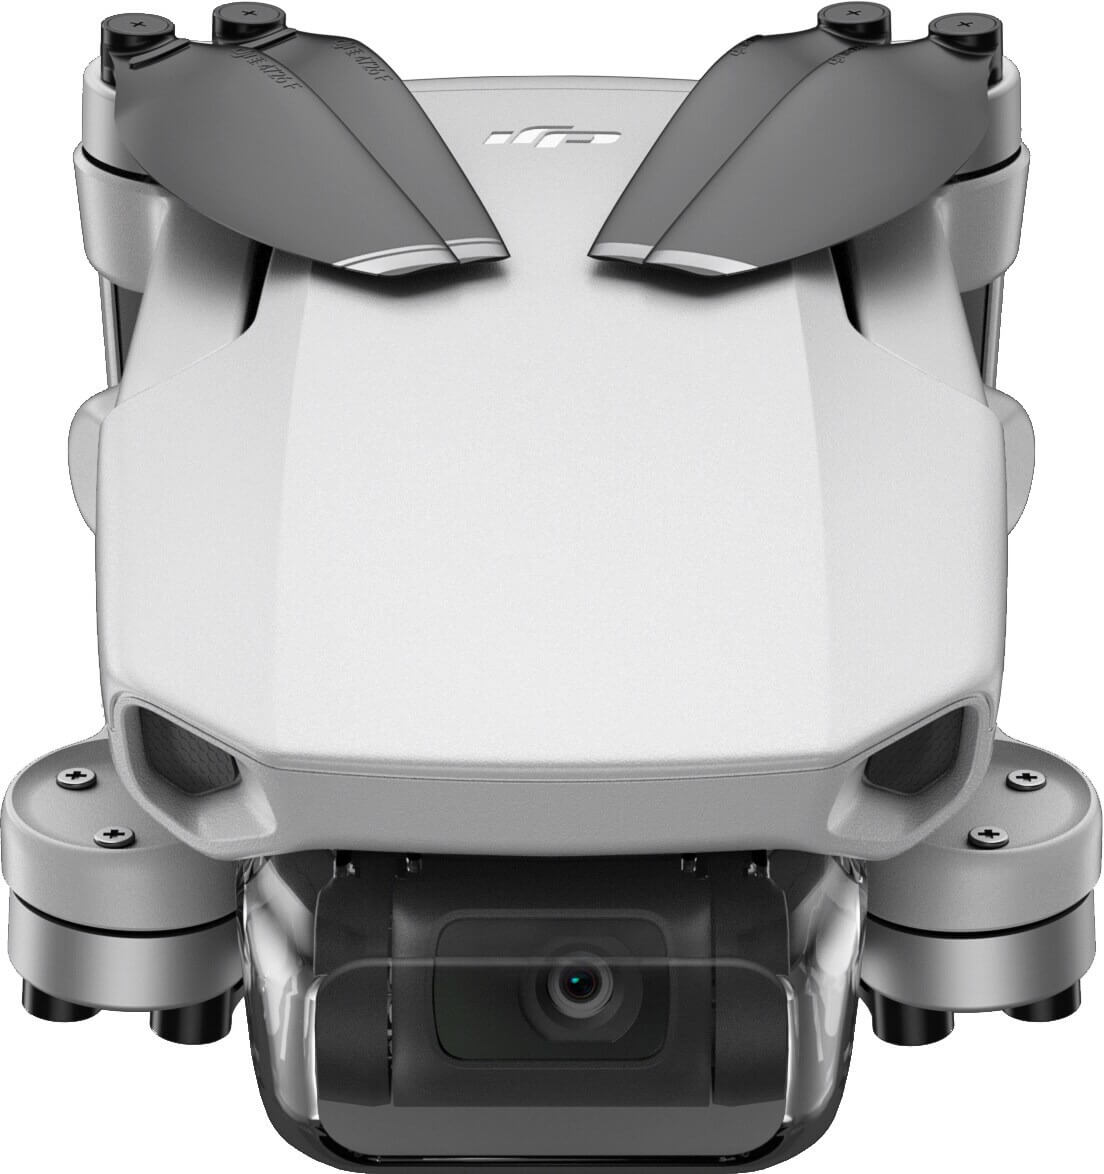 DJI Mavic Mini cena kiedy premiera specyfikacja techniczna drony plotki przecieki wycieki opinie